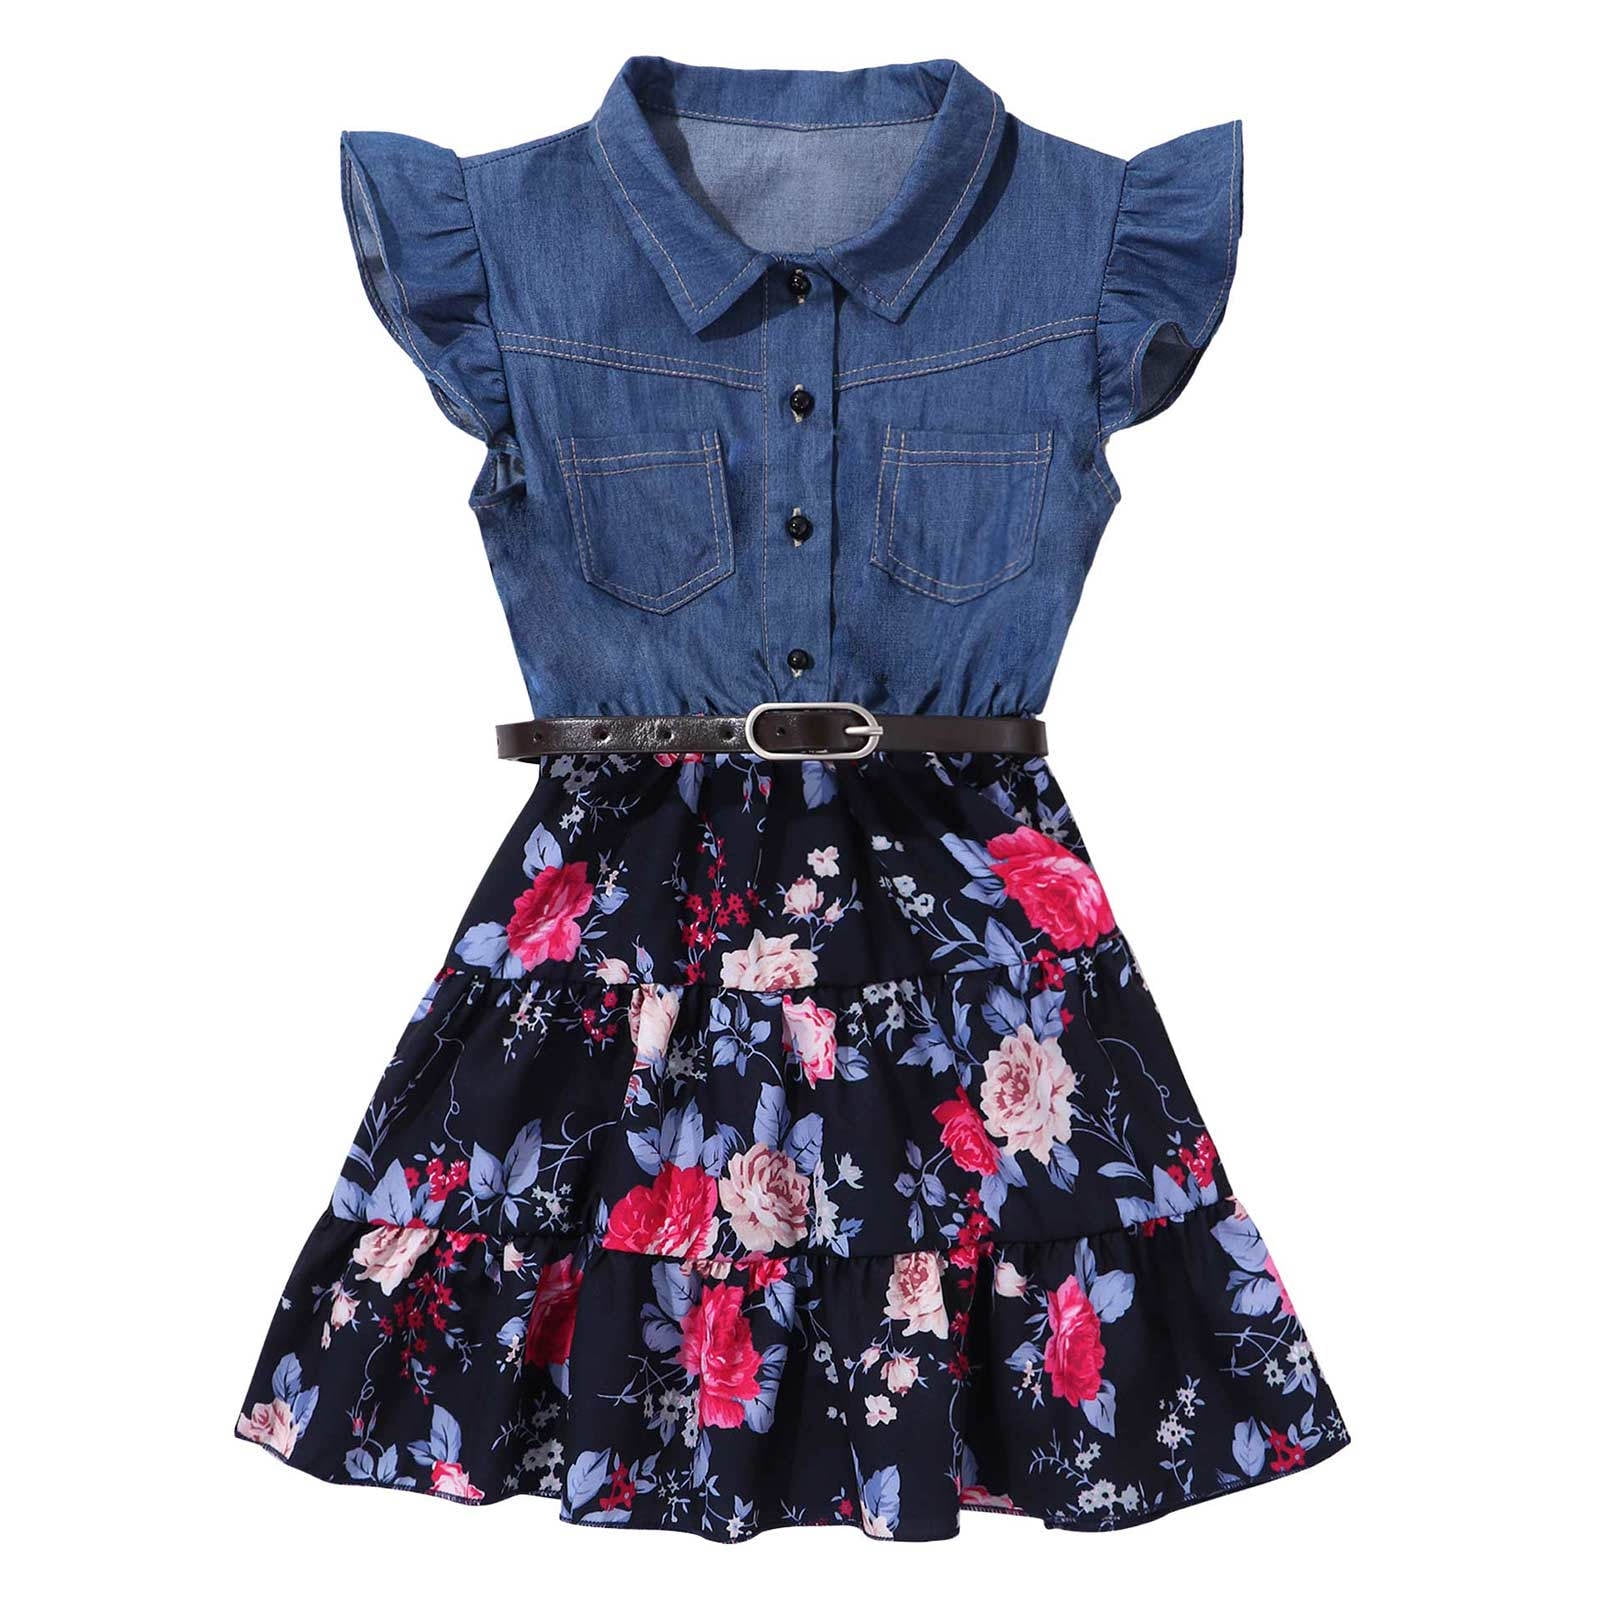 DPOIS Kids Girls Sleeveless Denim Floral Printed Dress Swing Skirt ...